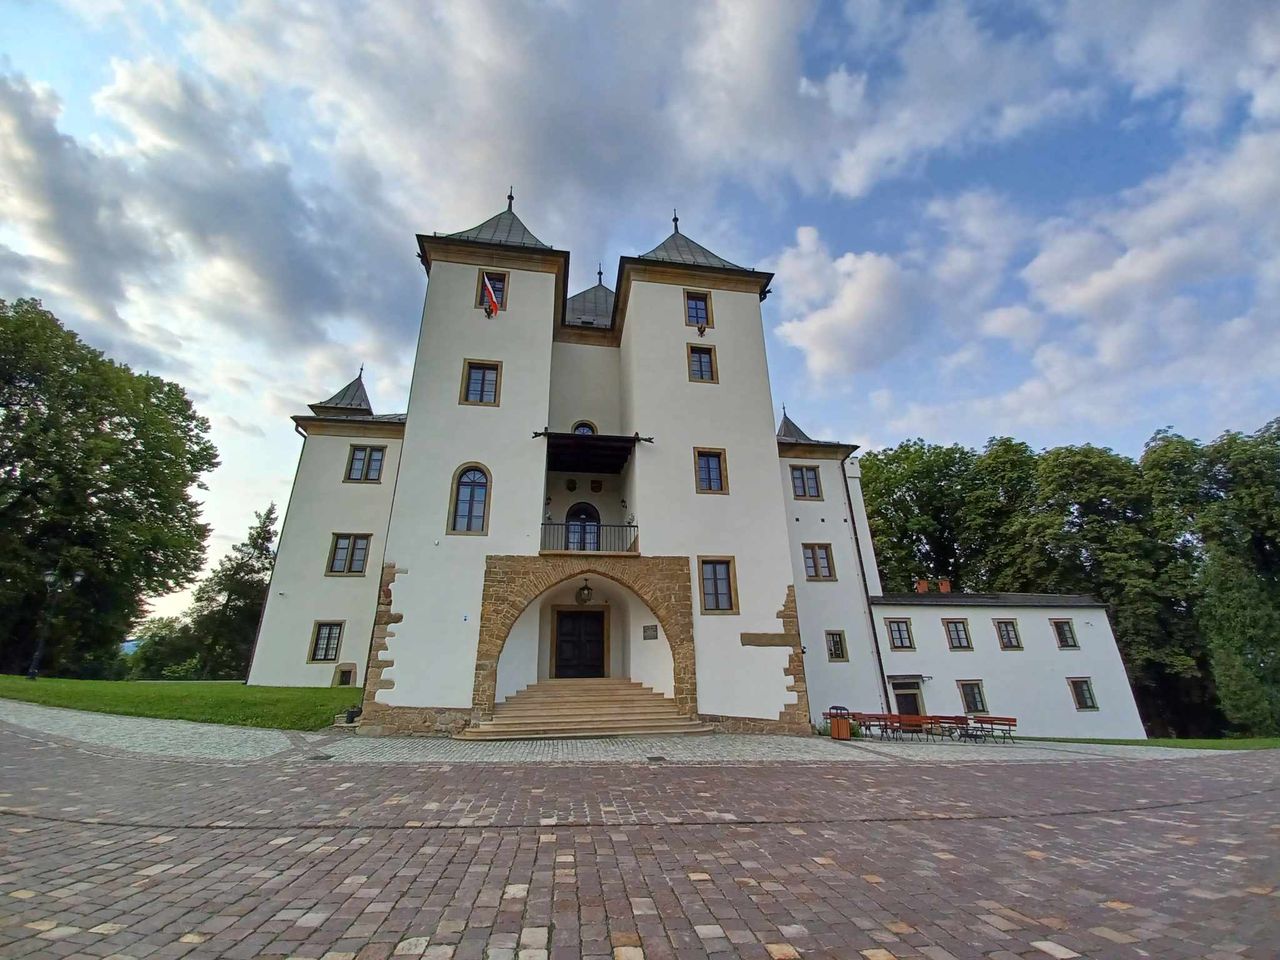 Arcydzieło w trzy lata. Zamek w Grodźcu Śląskim ma aż 9 tysięcy eksponatów